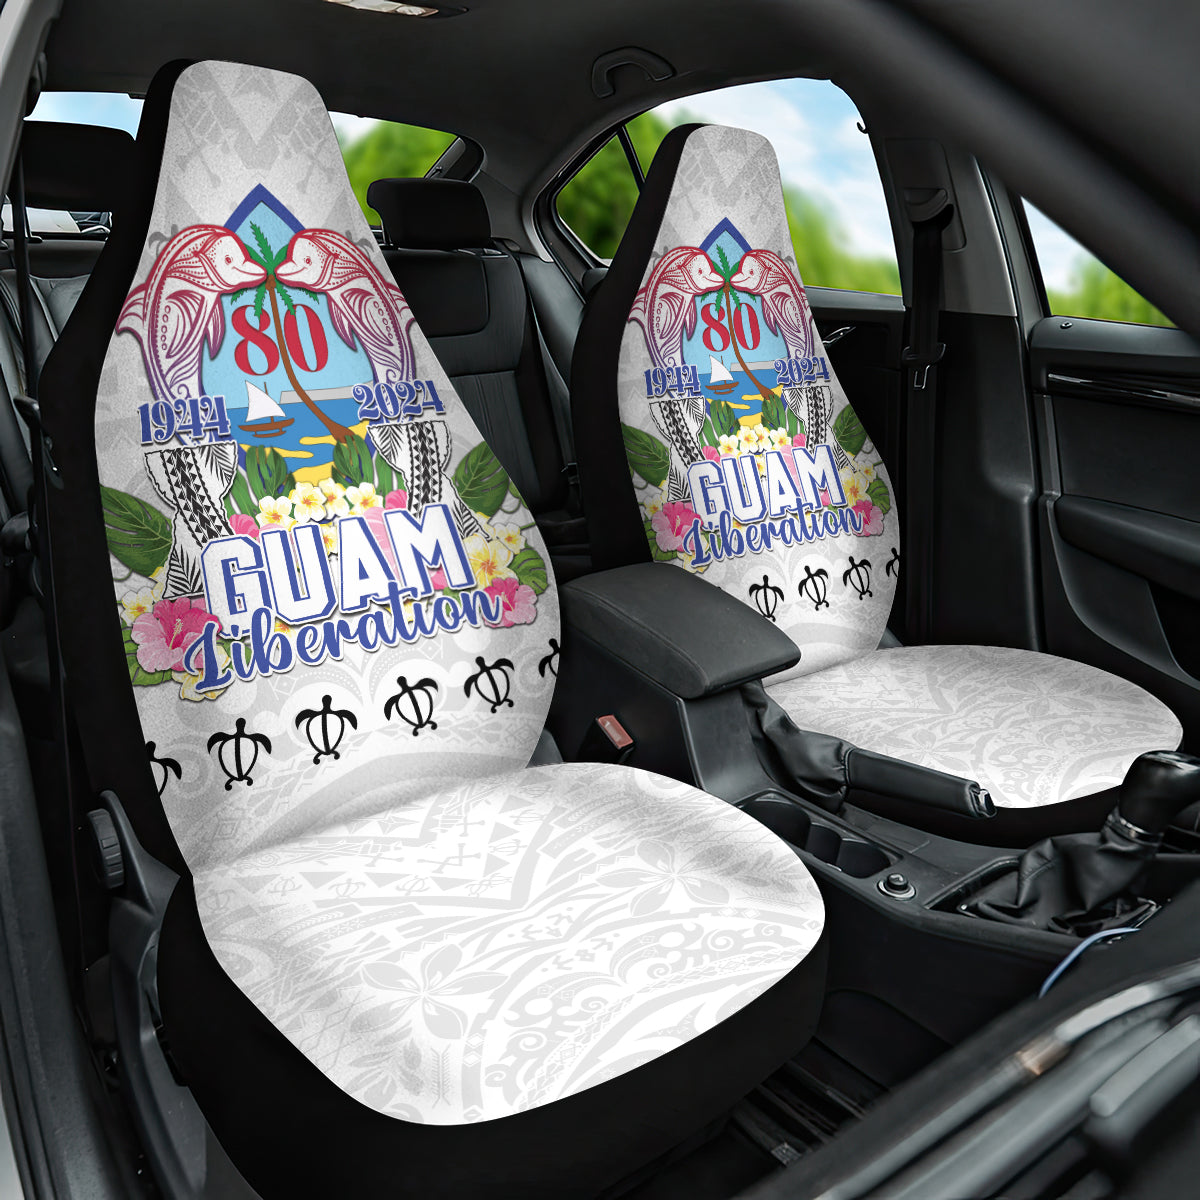 Guam Chamorro Liberation Day Car Seat Cover 80th Anniversary